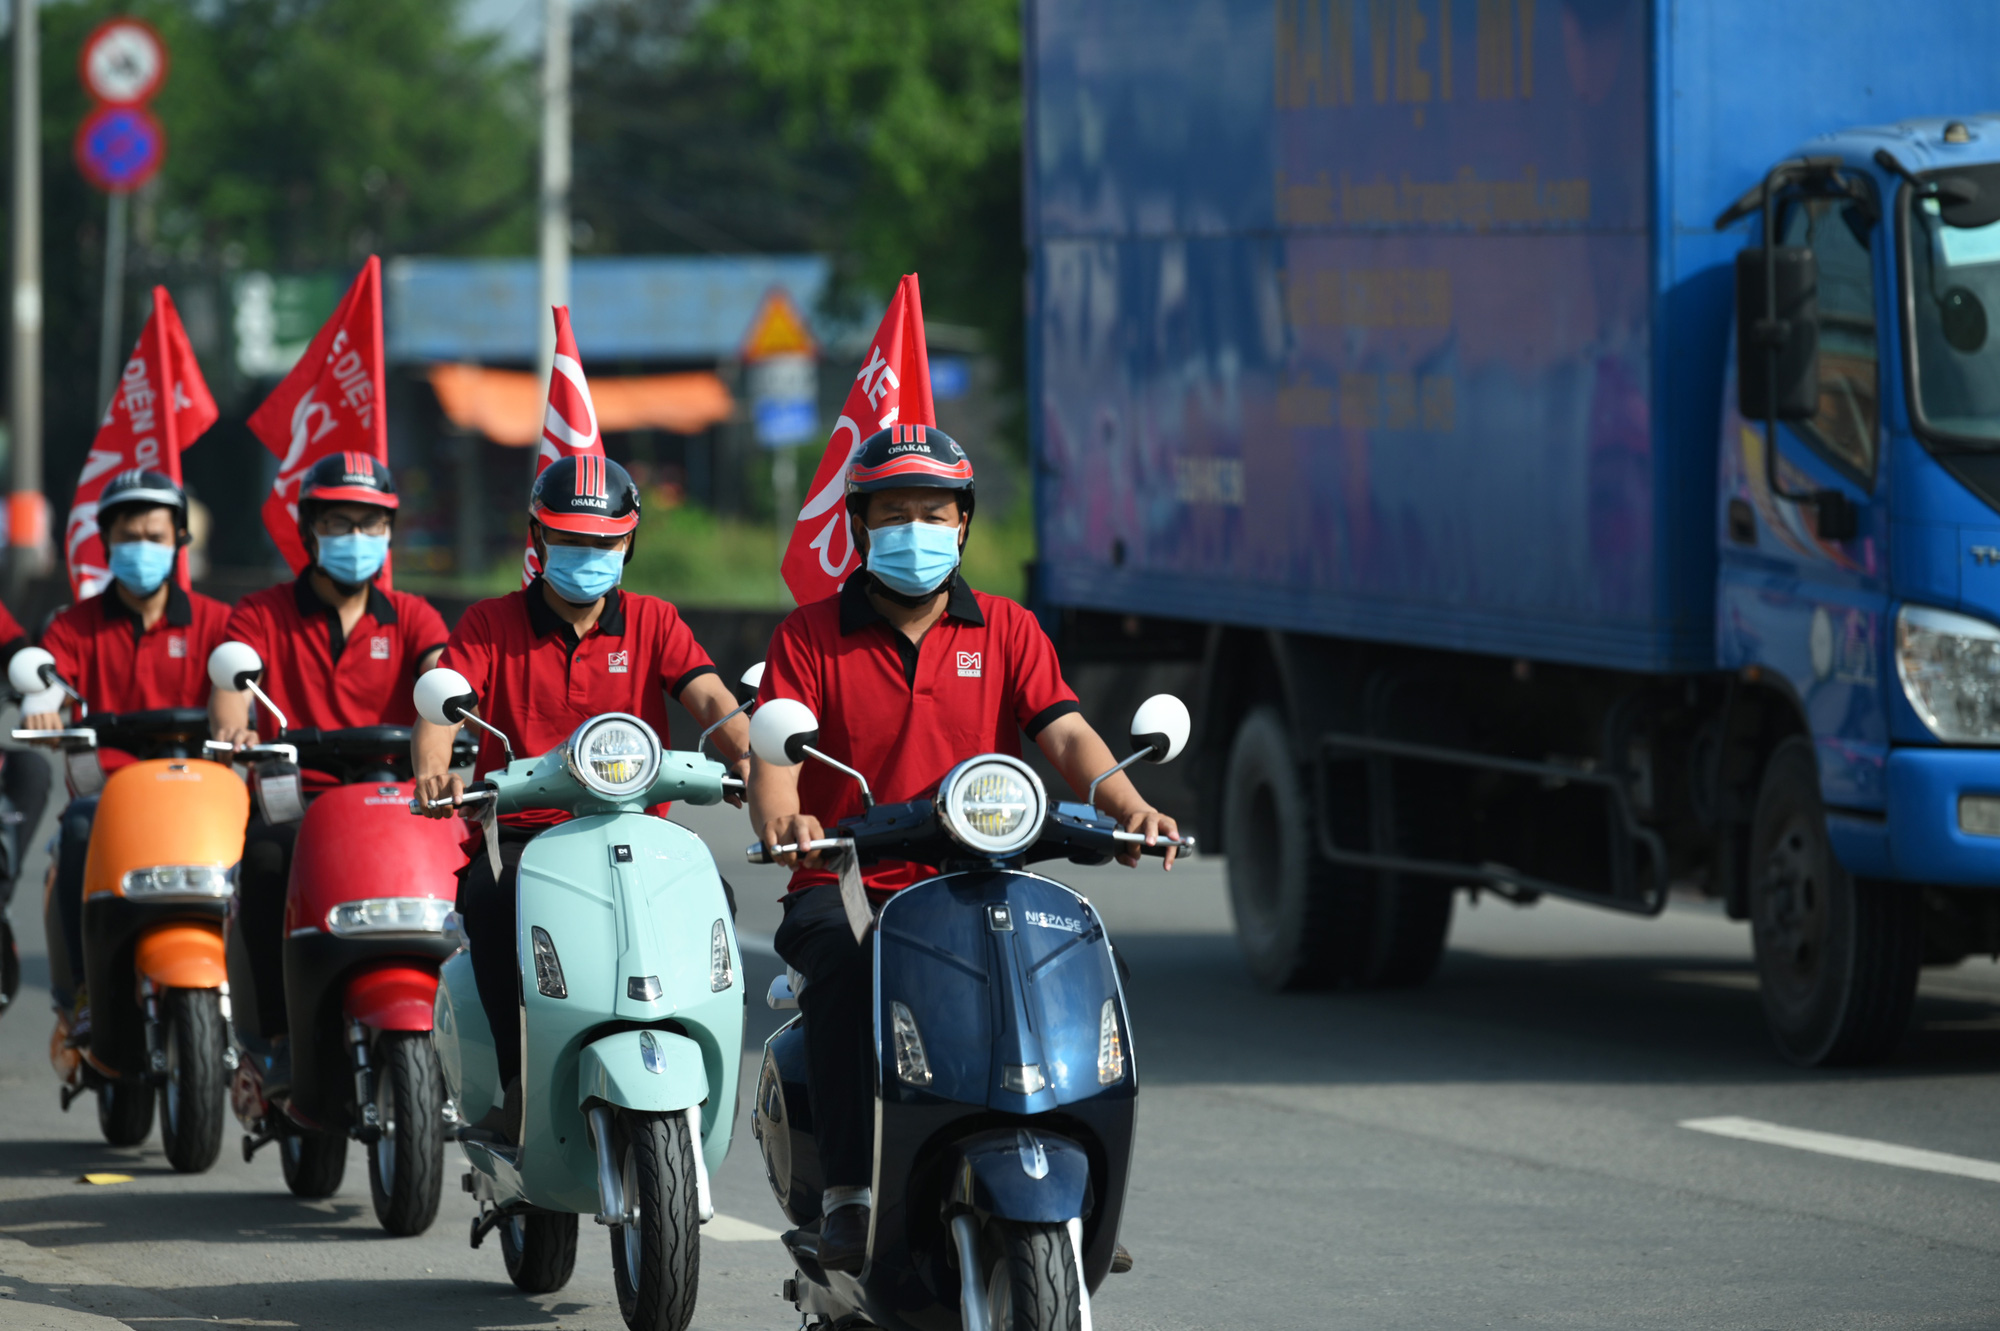 OSAKAR- thương hiệu xe điện Việt Nam tham vọng vươn ra quốc tế - Ảnh 1.